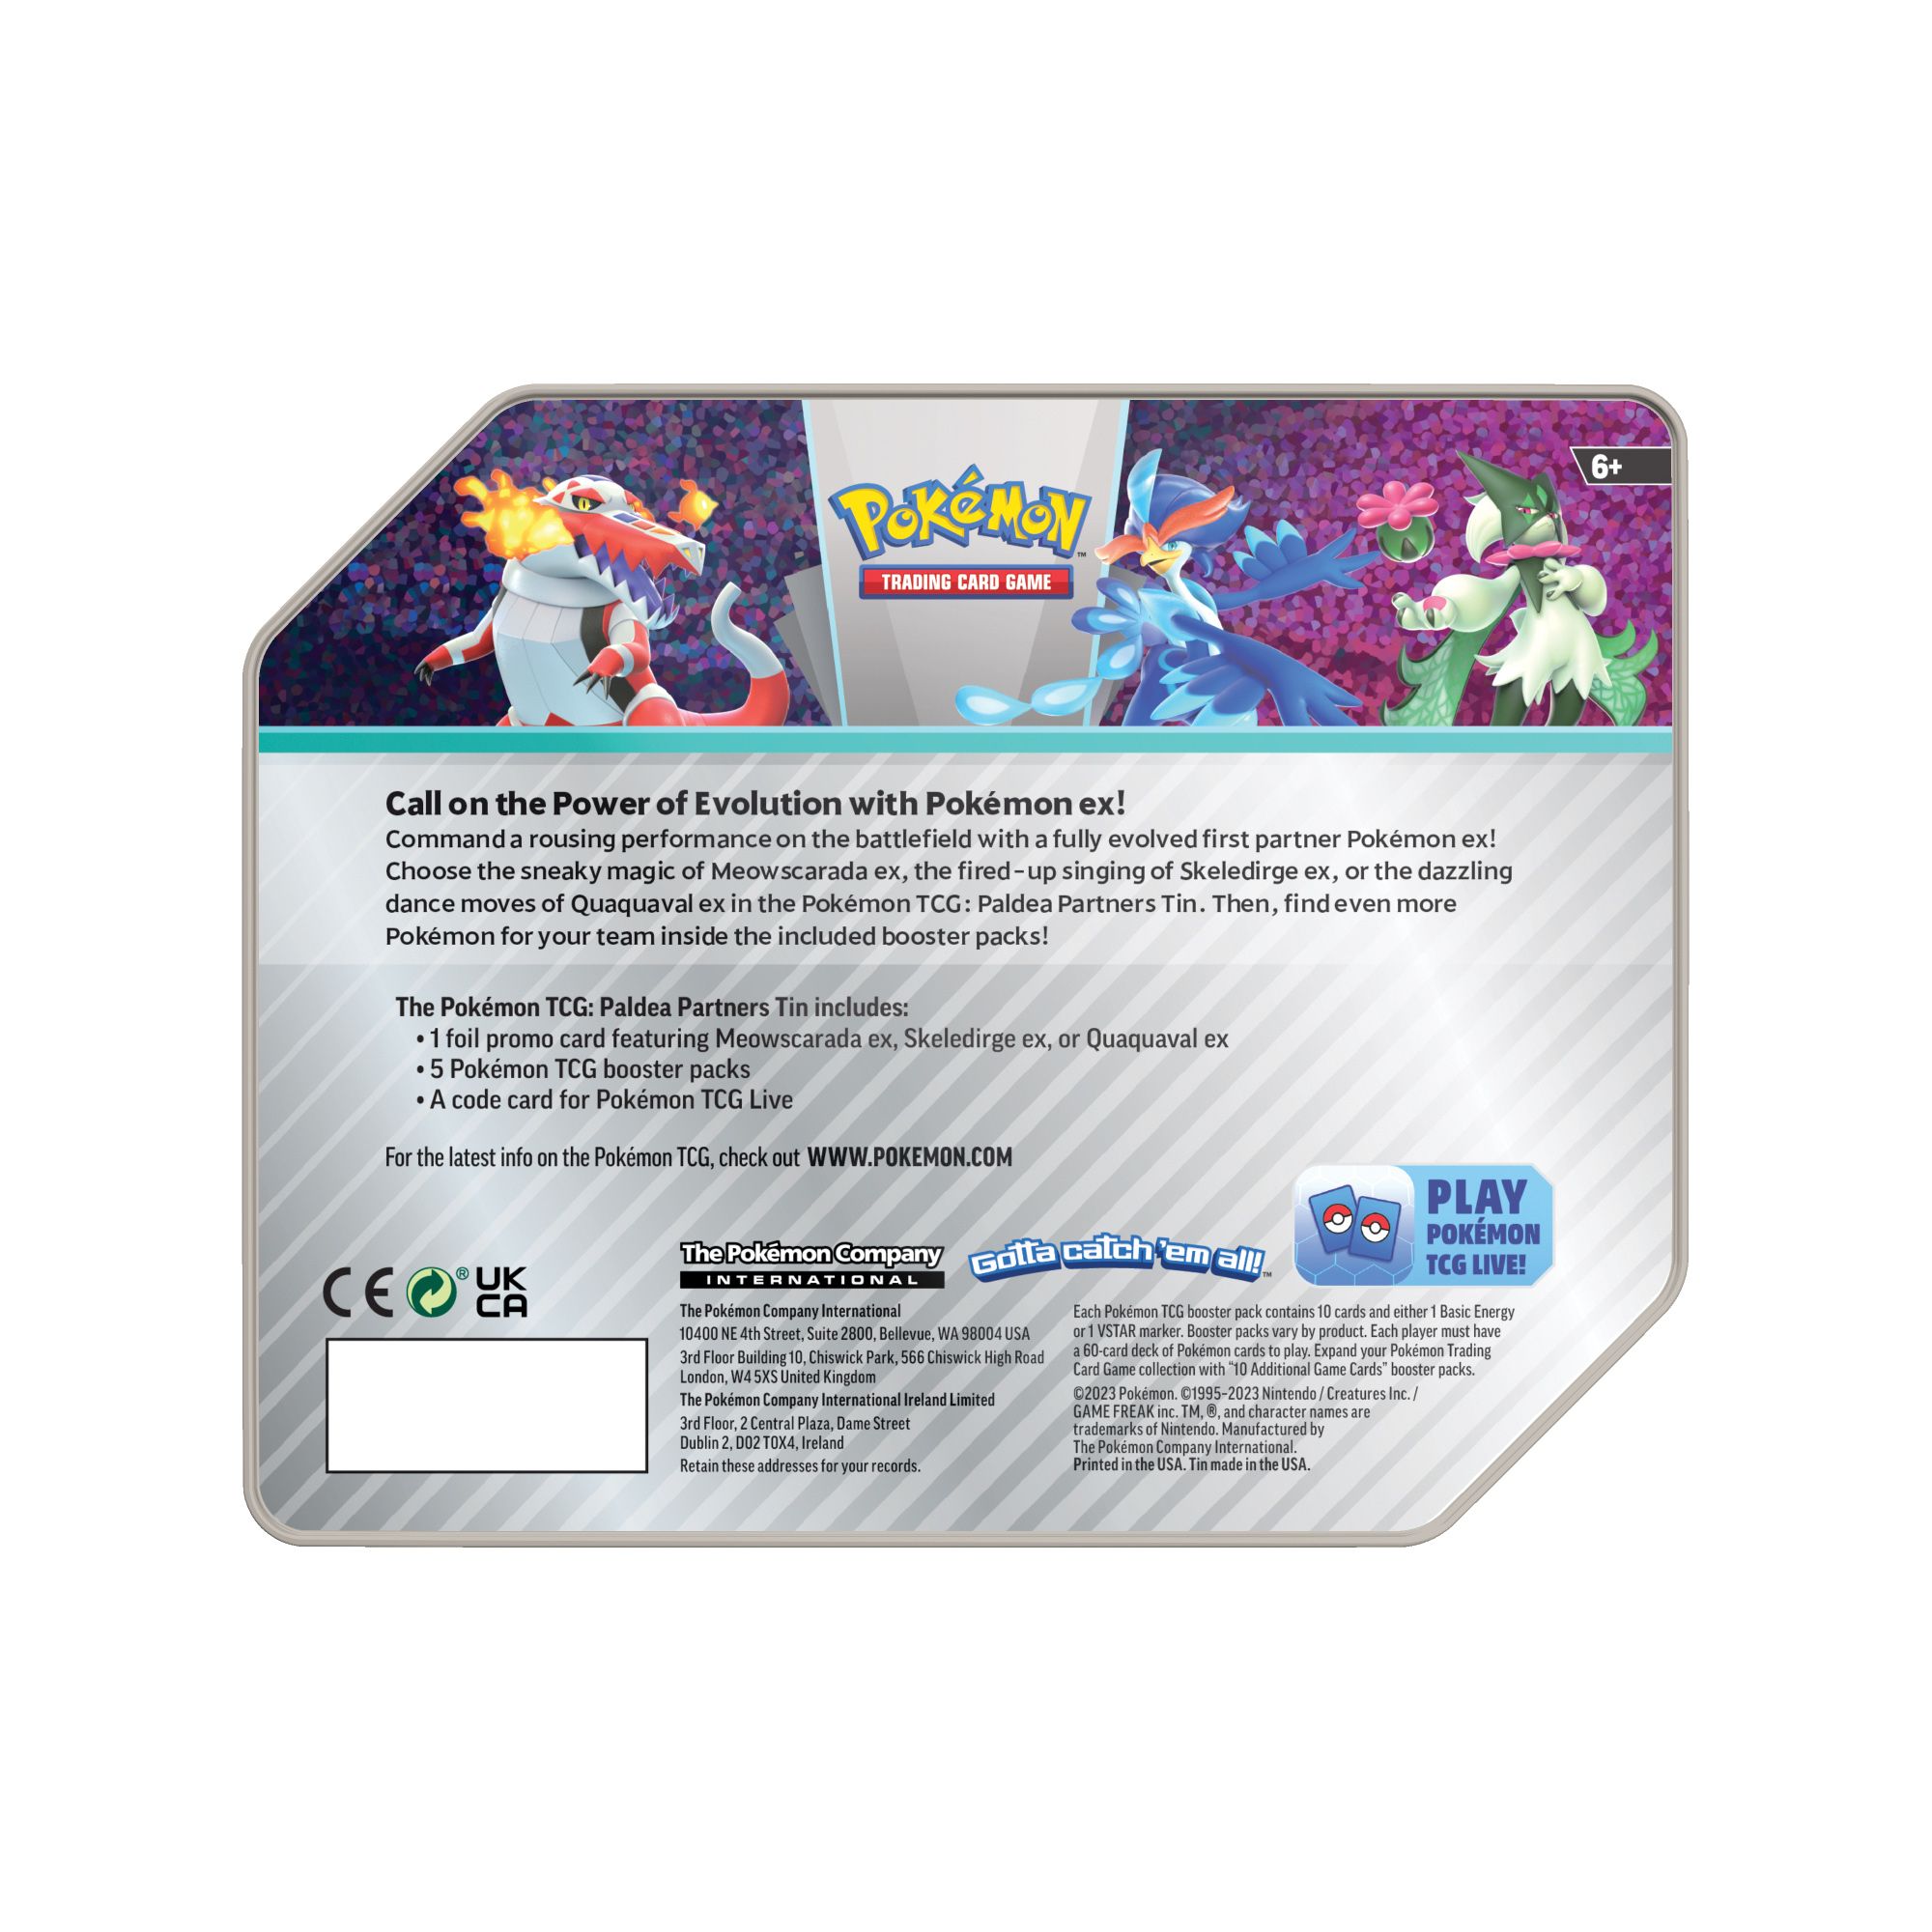 Pokemon Trading Card Game: Pokemon GO Tins (1 of 3 tins chosen at